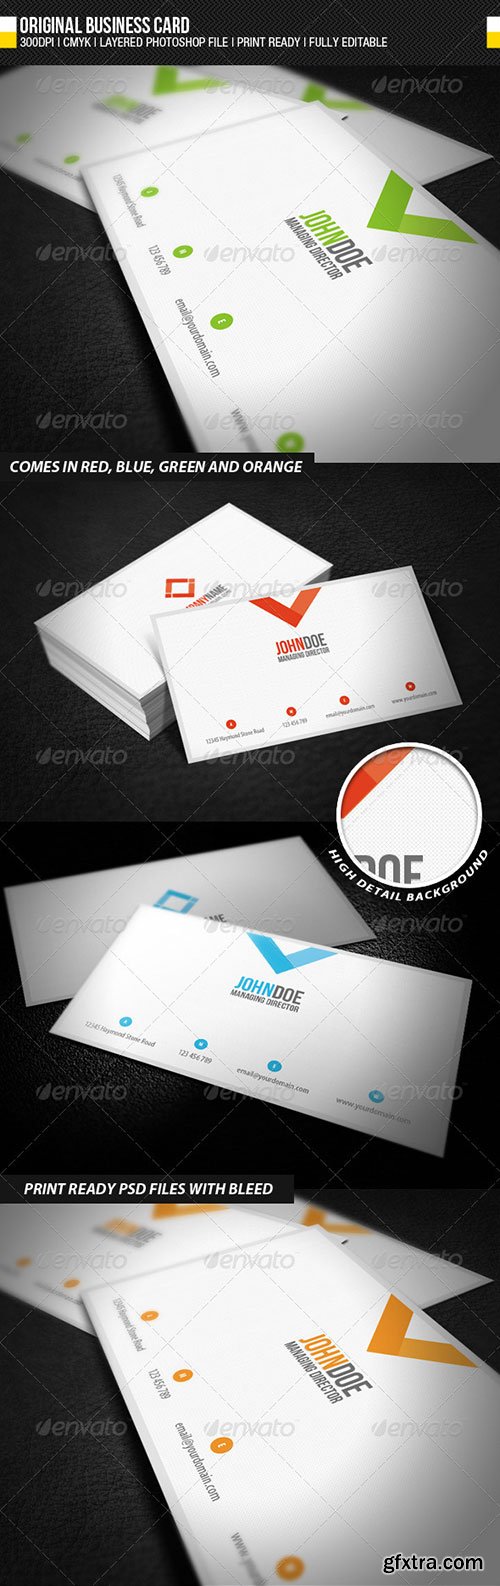 Graphicriver - Original Business Card